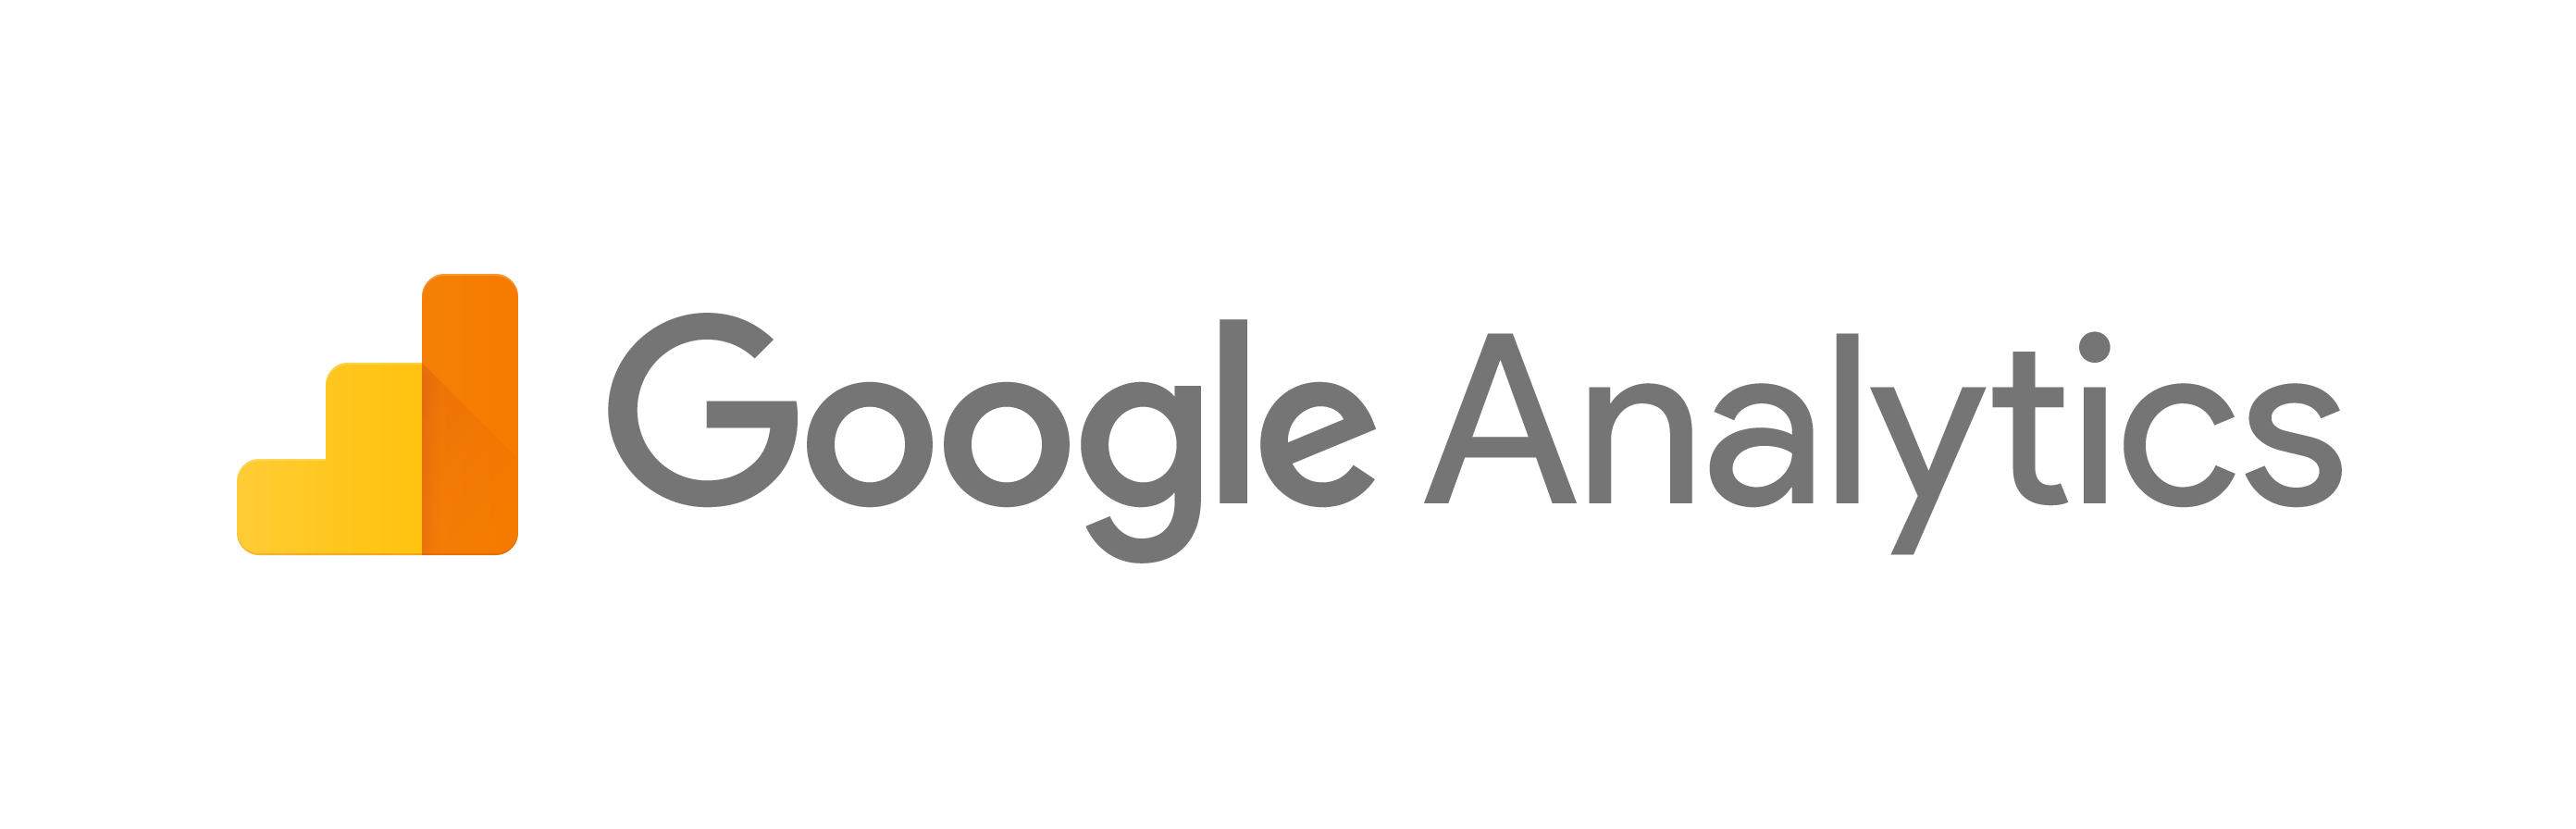 Google Analytics- Google Certificattion